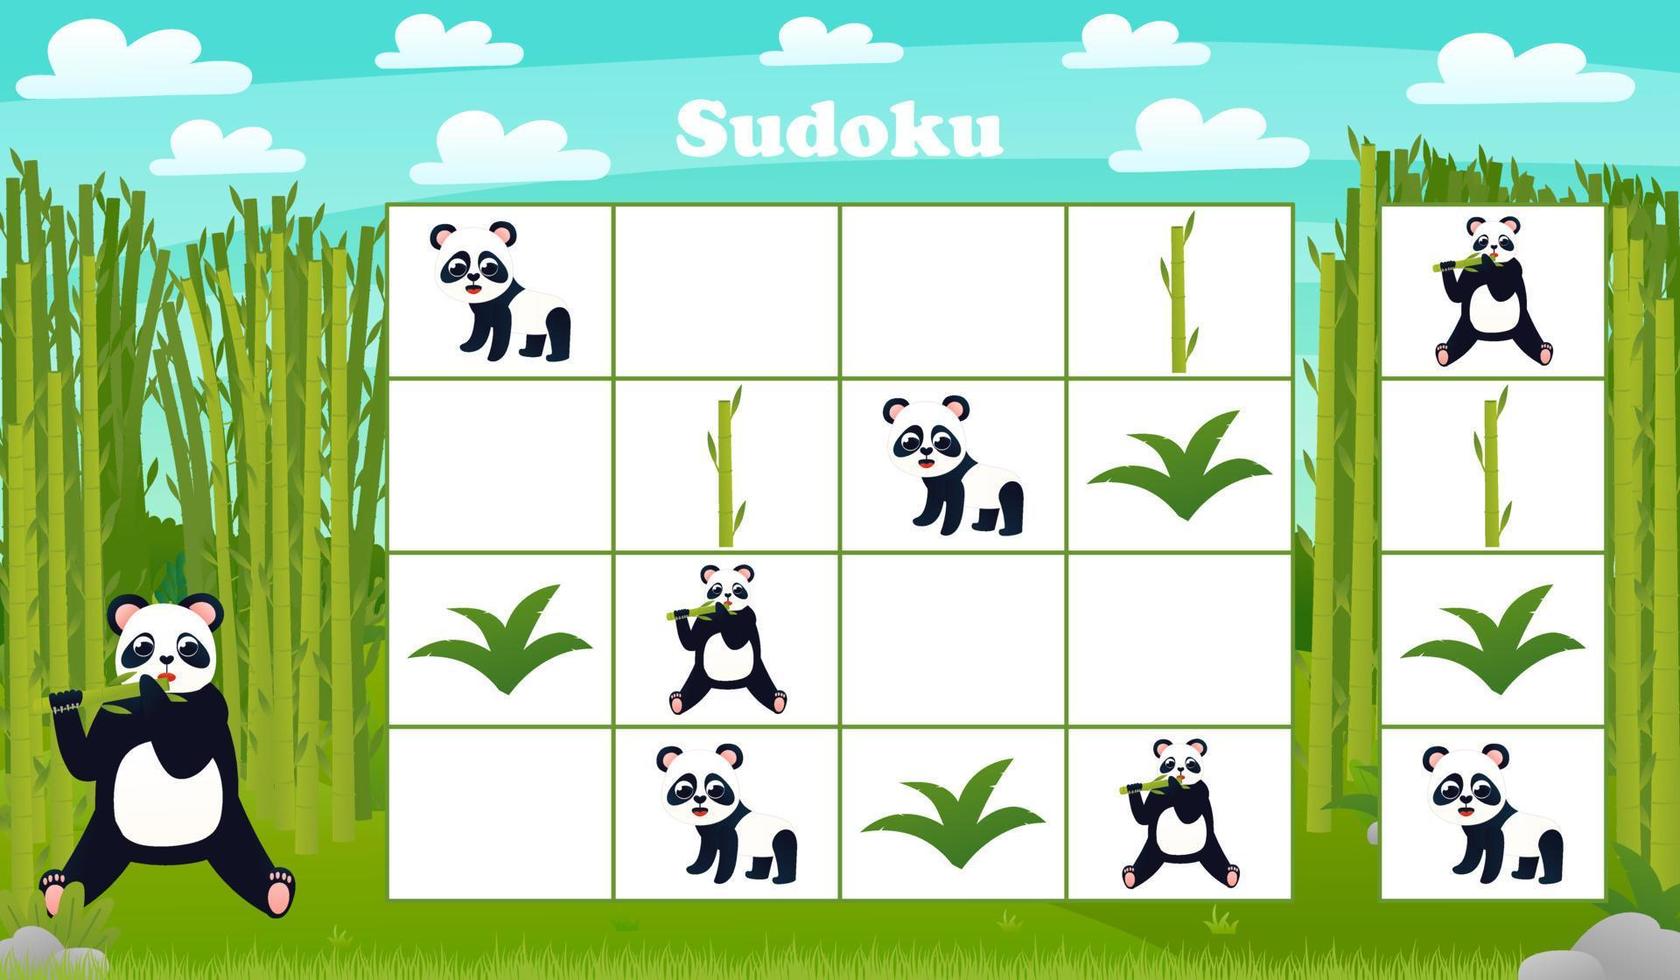 jeu de société sudoku pour enfants avec panda de dessin animé et bambou dans la forêt. énigme avec des personnages animaux vecteur